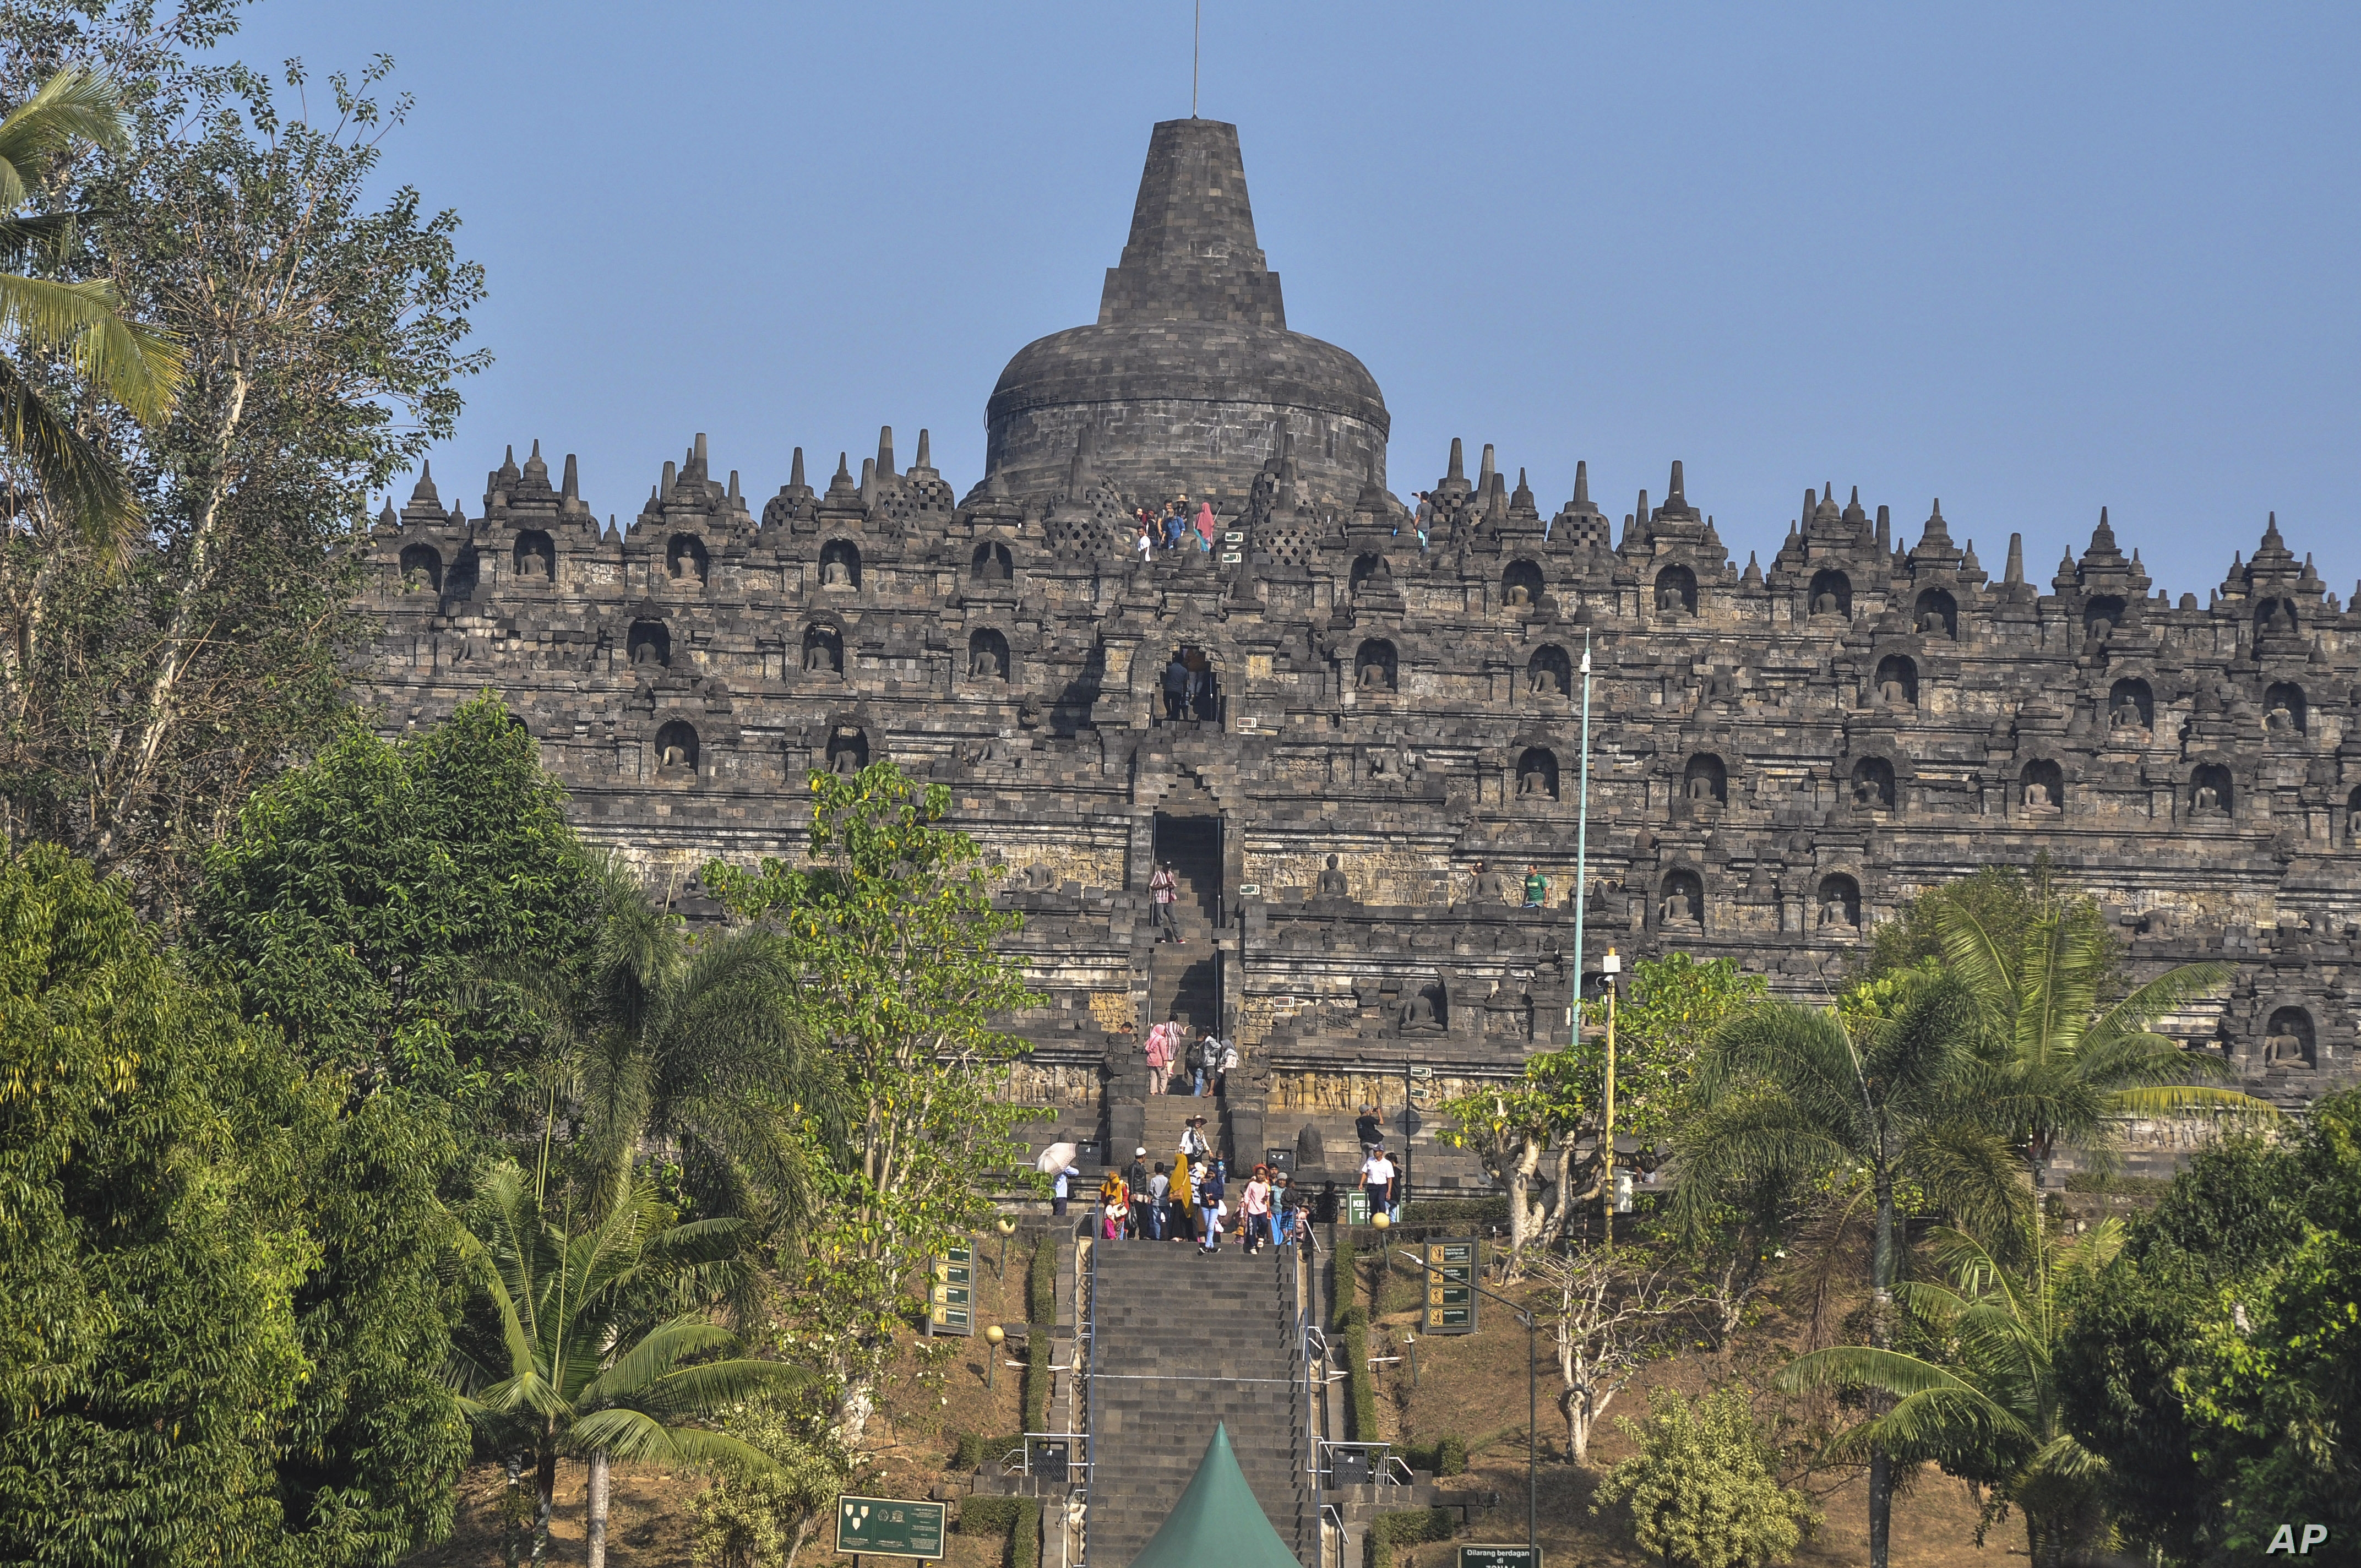 Tham quan đền chùa là hoạt động không thể thiếu khi du lịch Bali